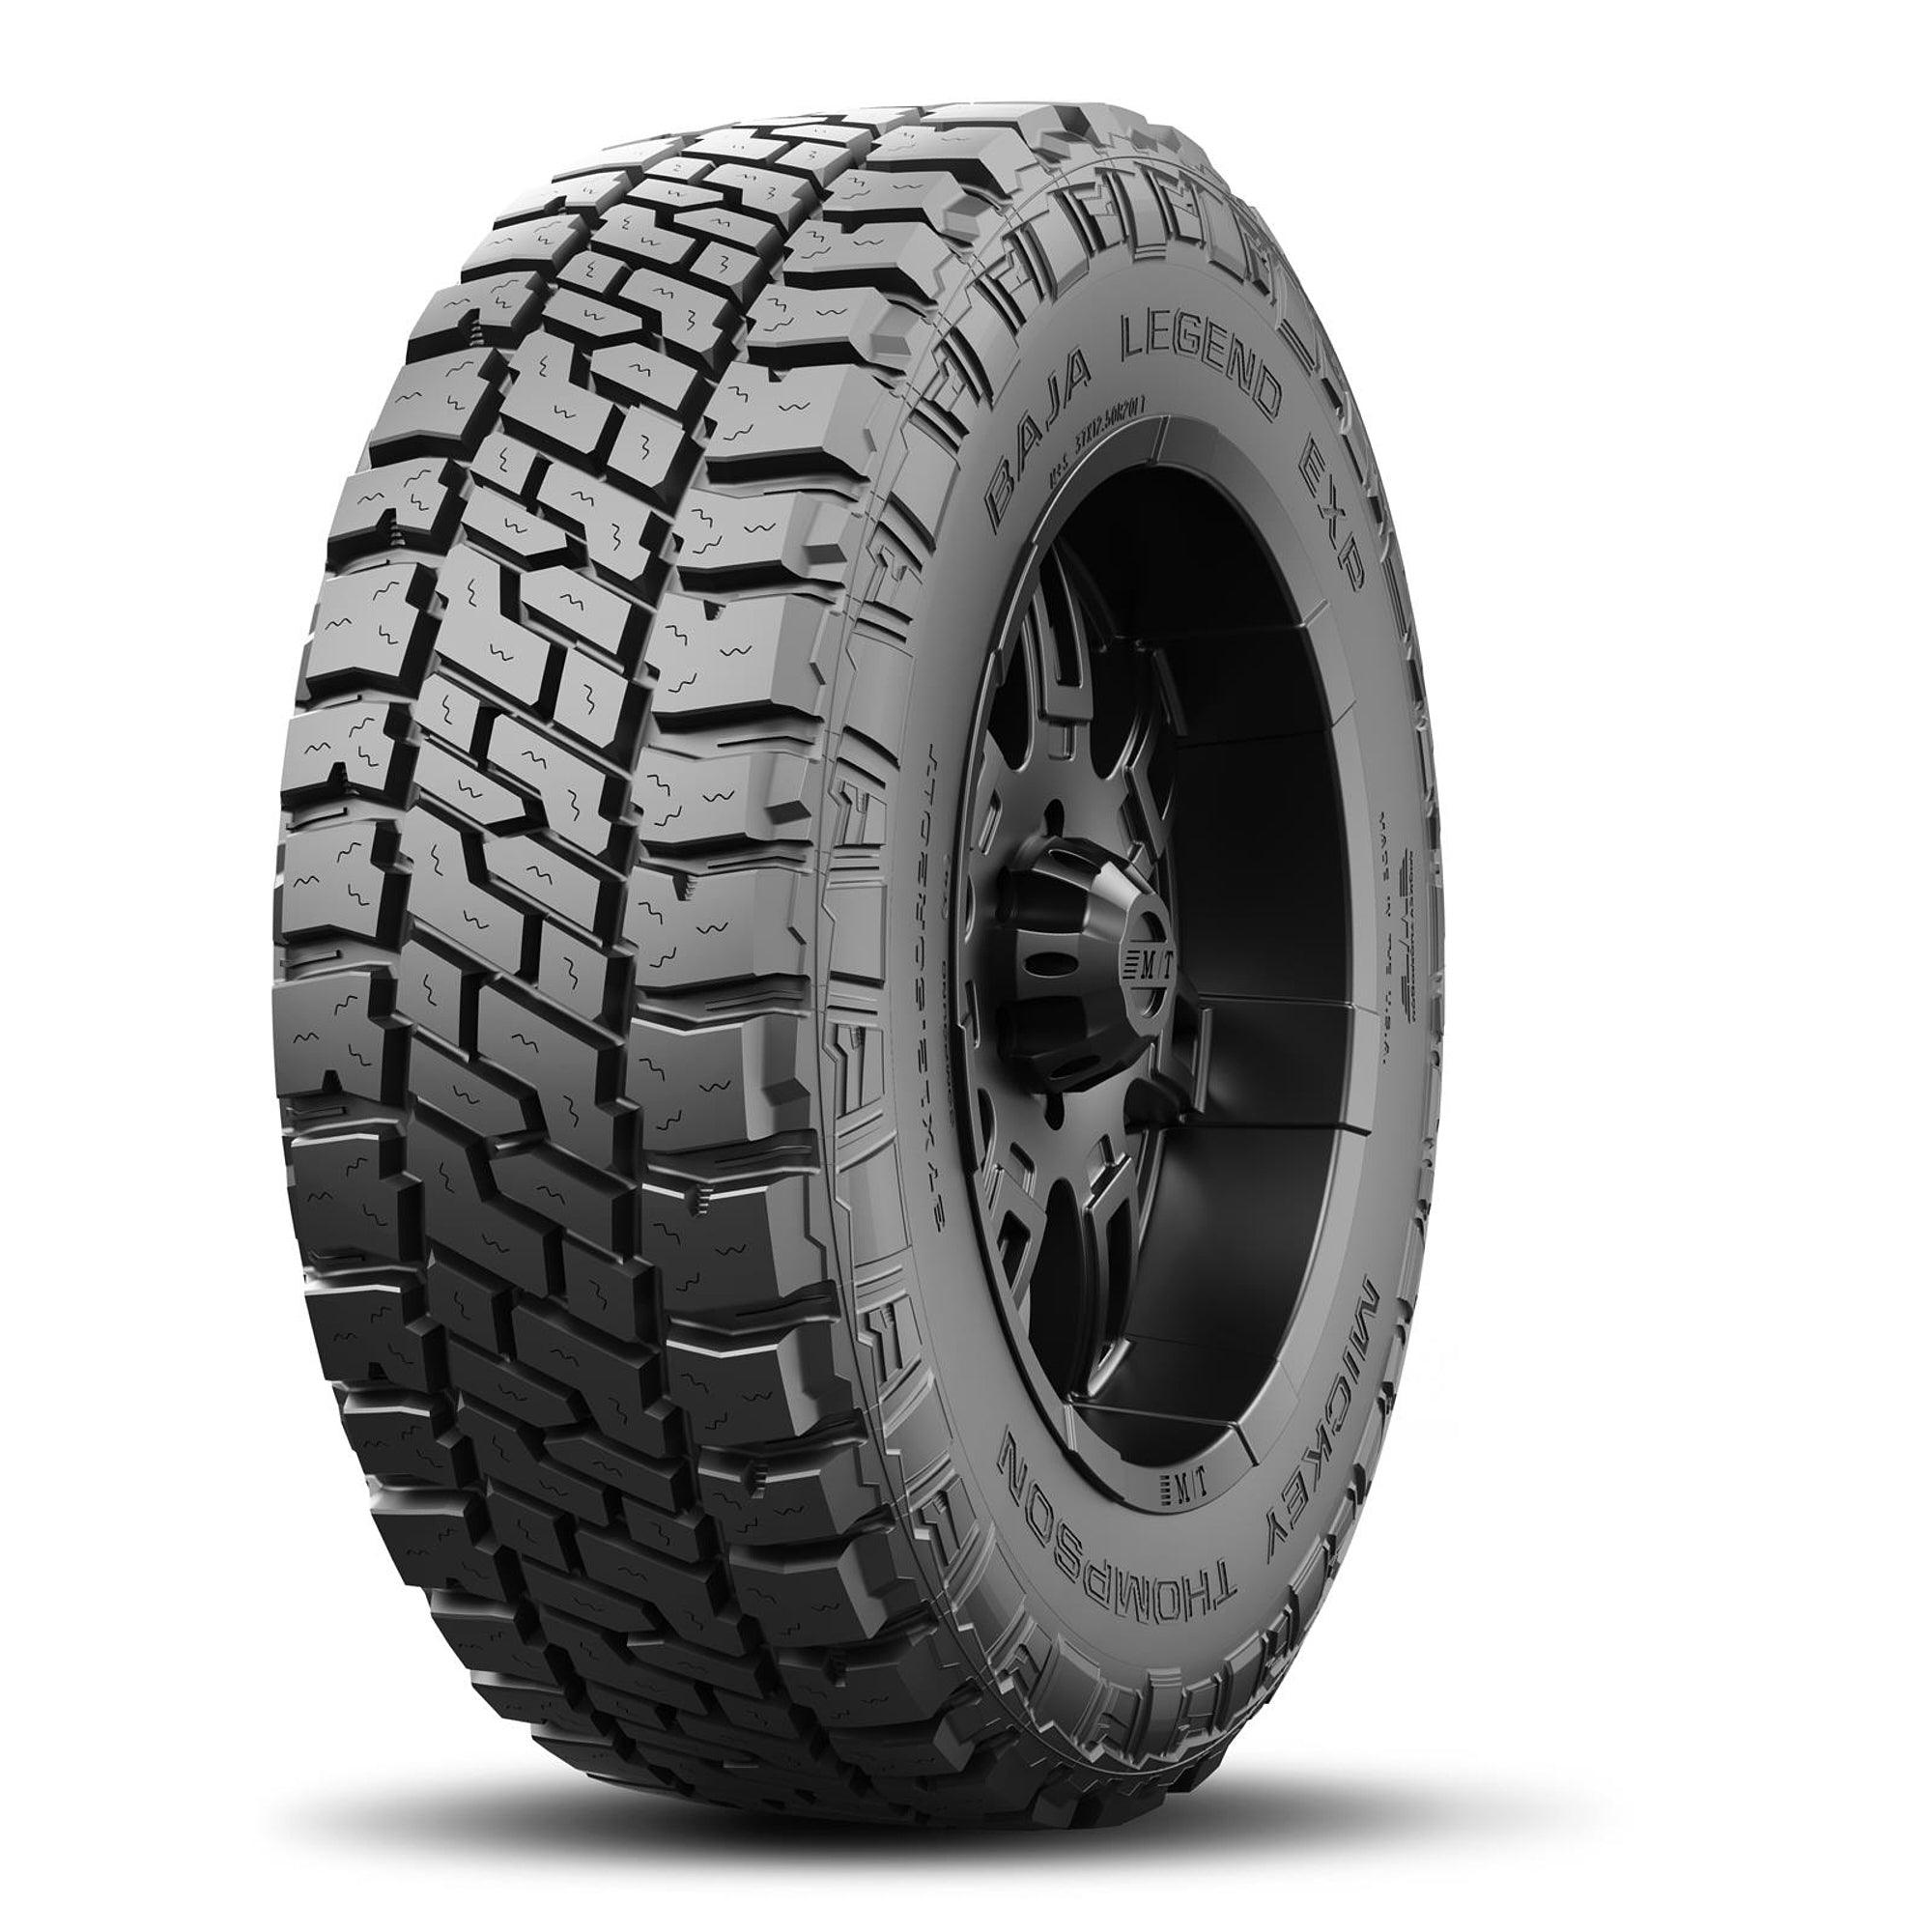 Baja Legend EXP Tire LT265/70R16 121/118Q - Burlile Performance Products